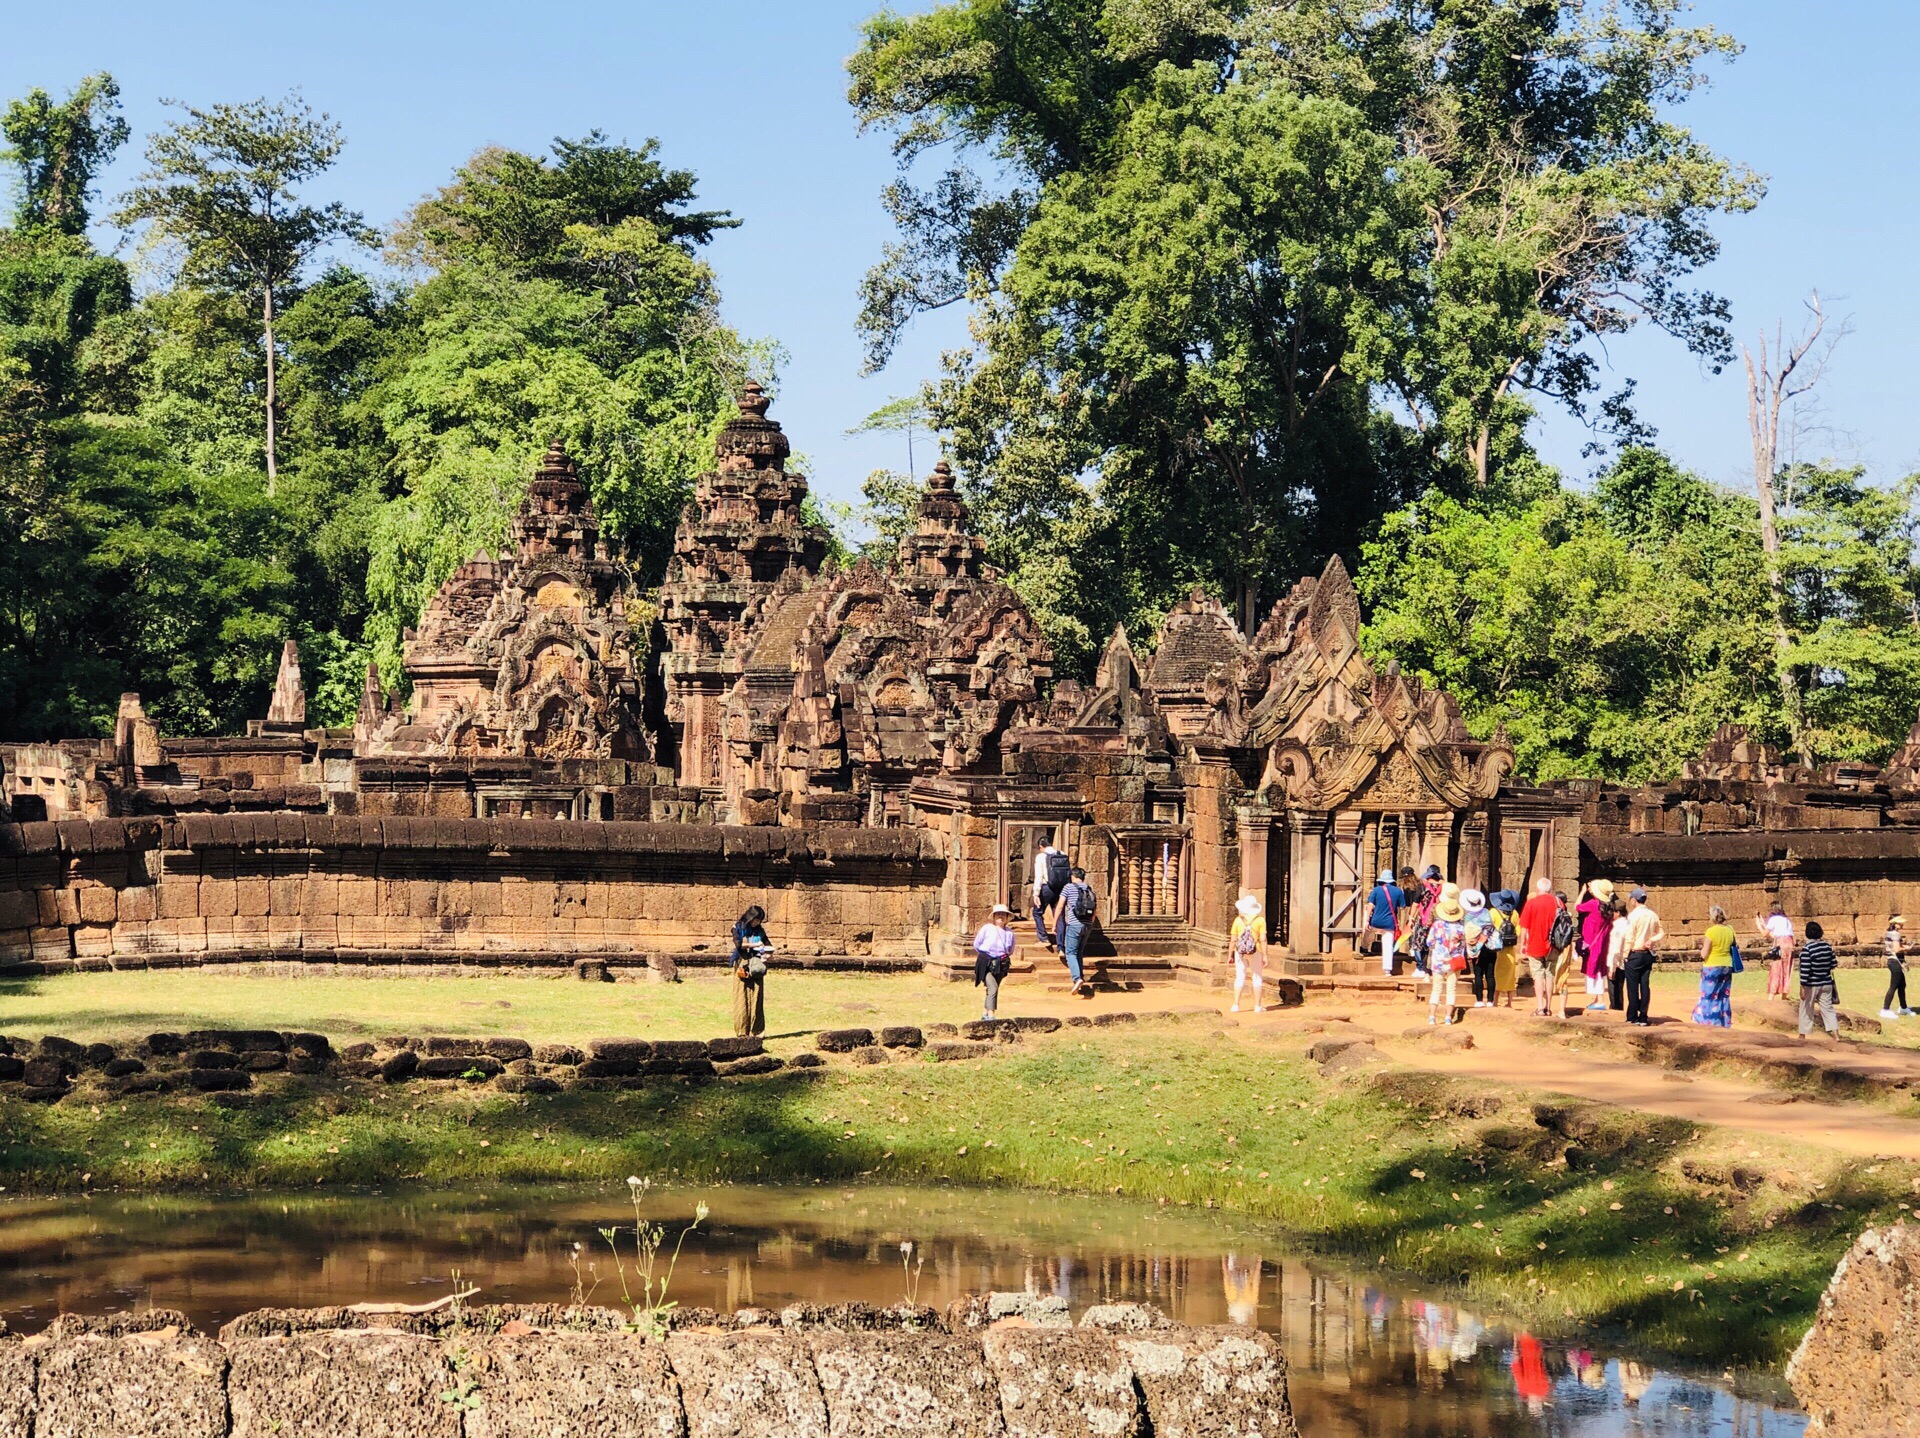 班蒂斯蕾—也将其叫做“女王宫”，距吴哥城约25公里，是柬埔寨三大圣庙之一，被誉为“吴哥古迹中的明珠”